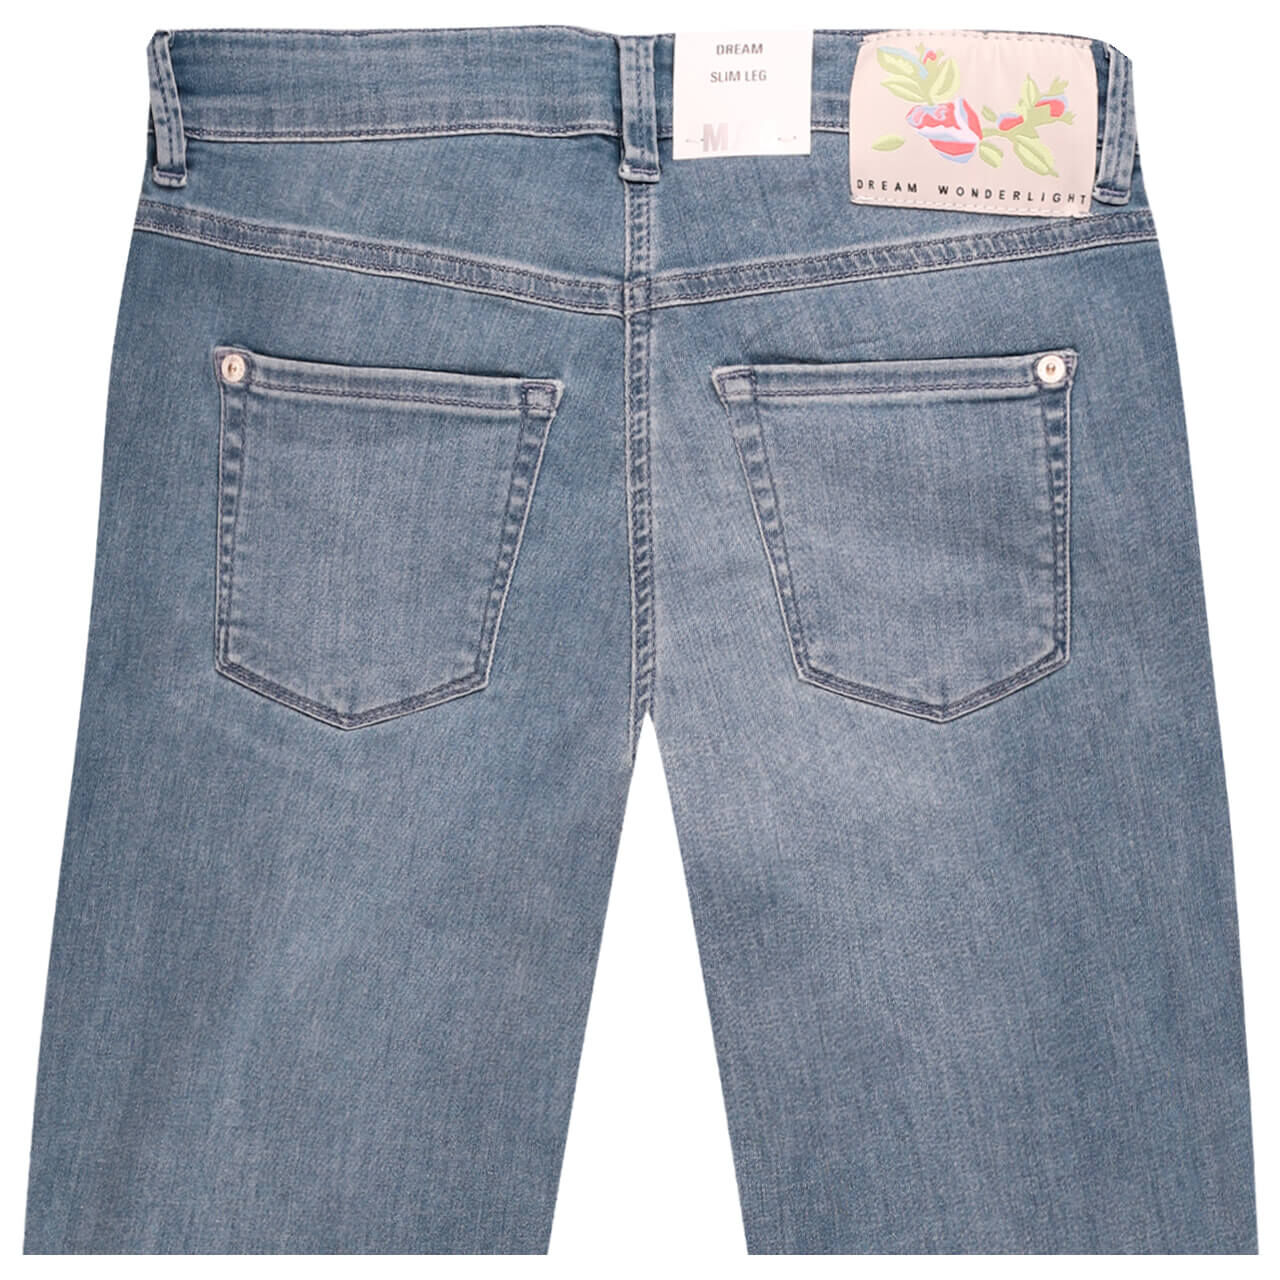 MAC Dream Summer 7/8 Jeans fashion bleached